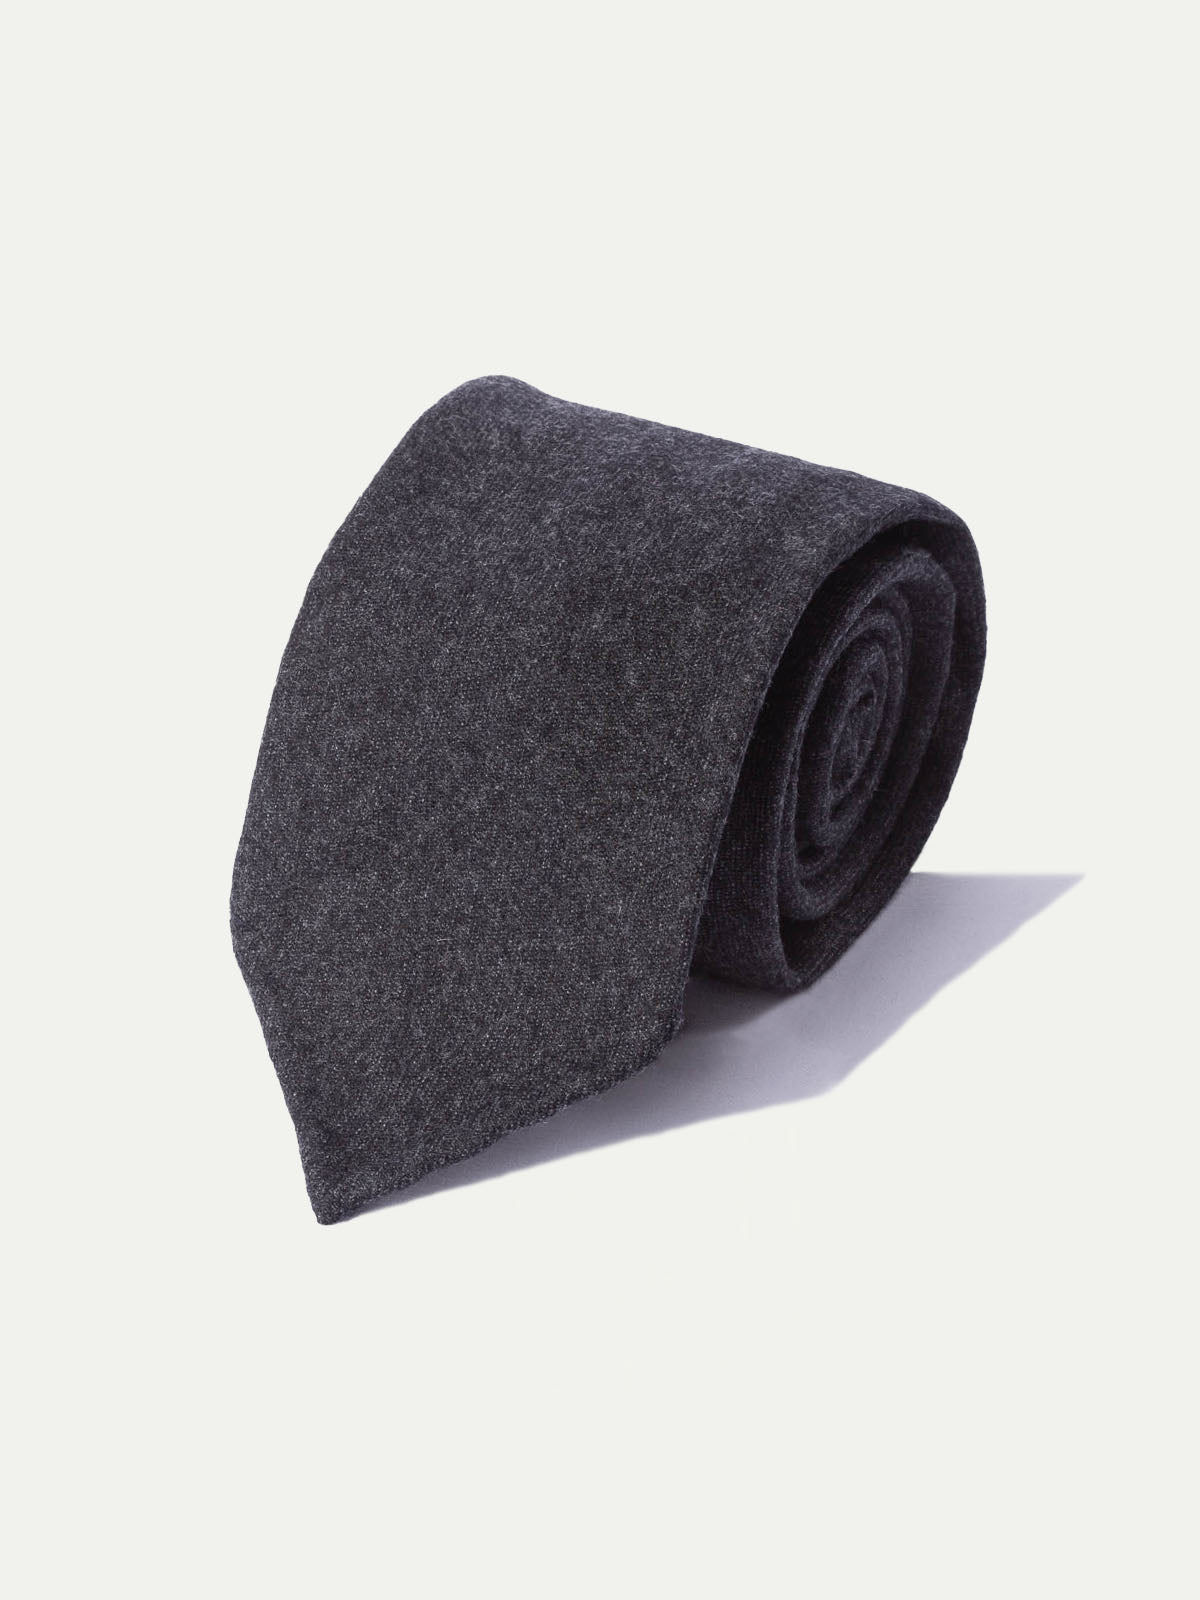 Cravate en flanelle gris foncé - Fabriquée à la main en Italie